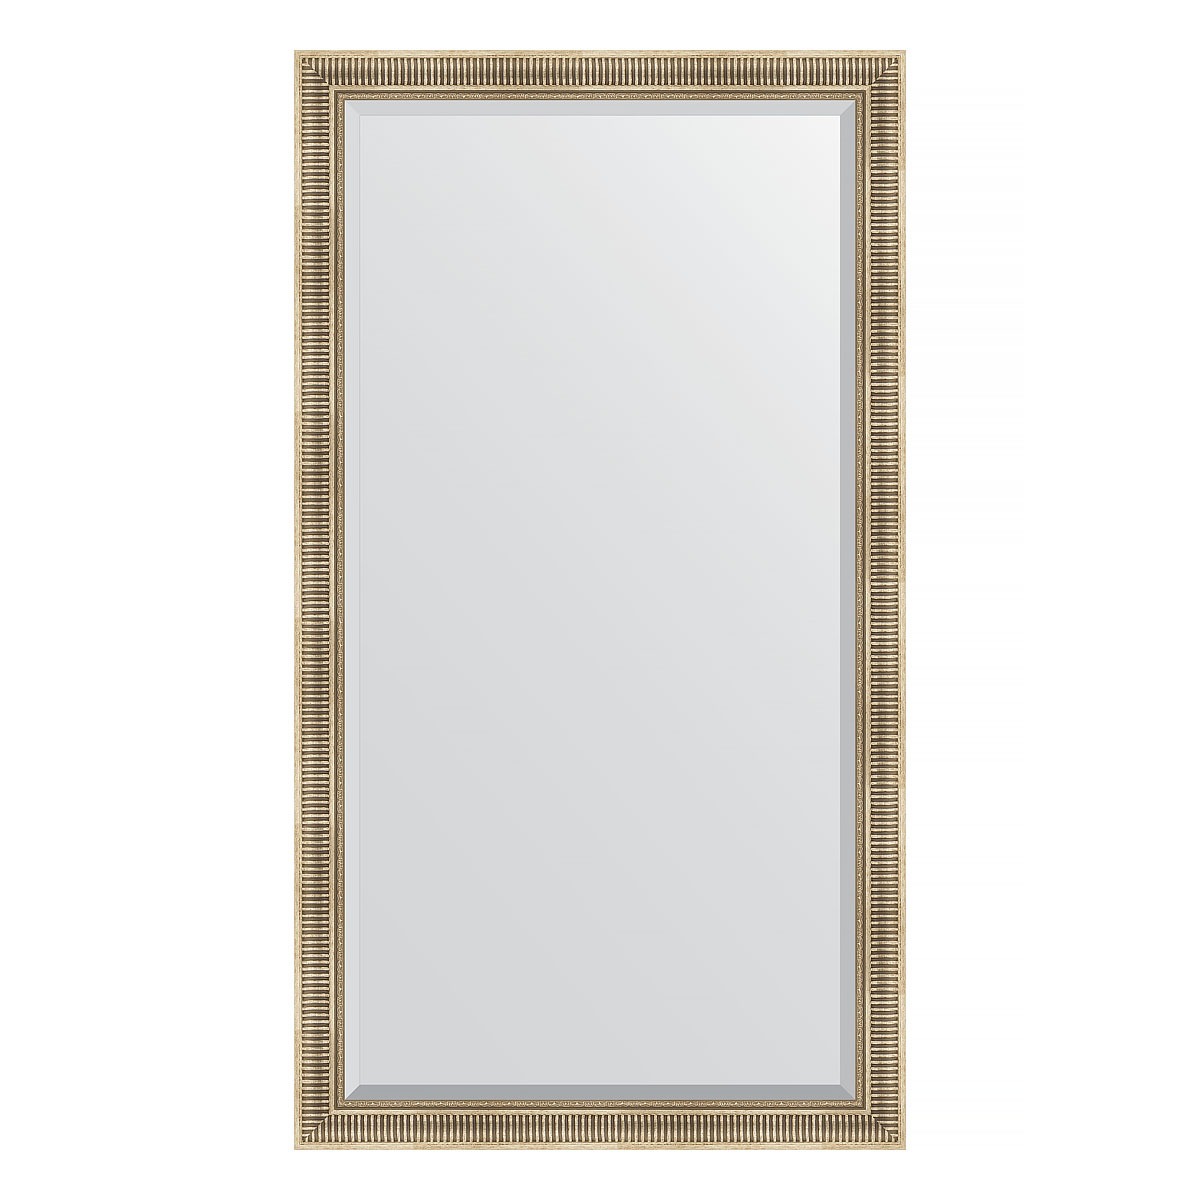 Зеркало напольное с фацетом в багетной раме Evoform серебряный акведук 93 мм 112x202 см